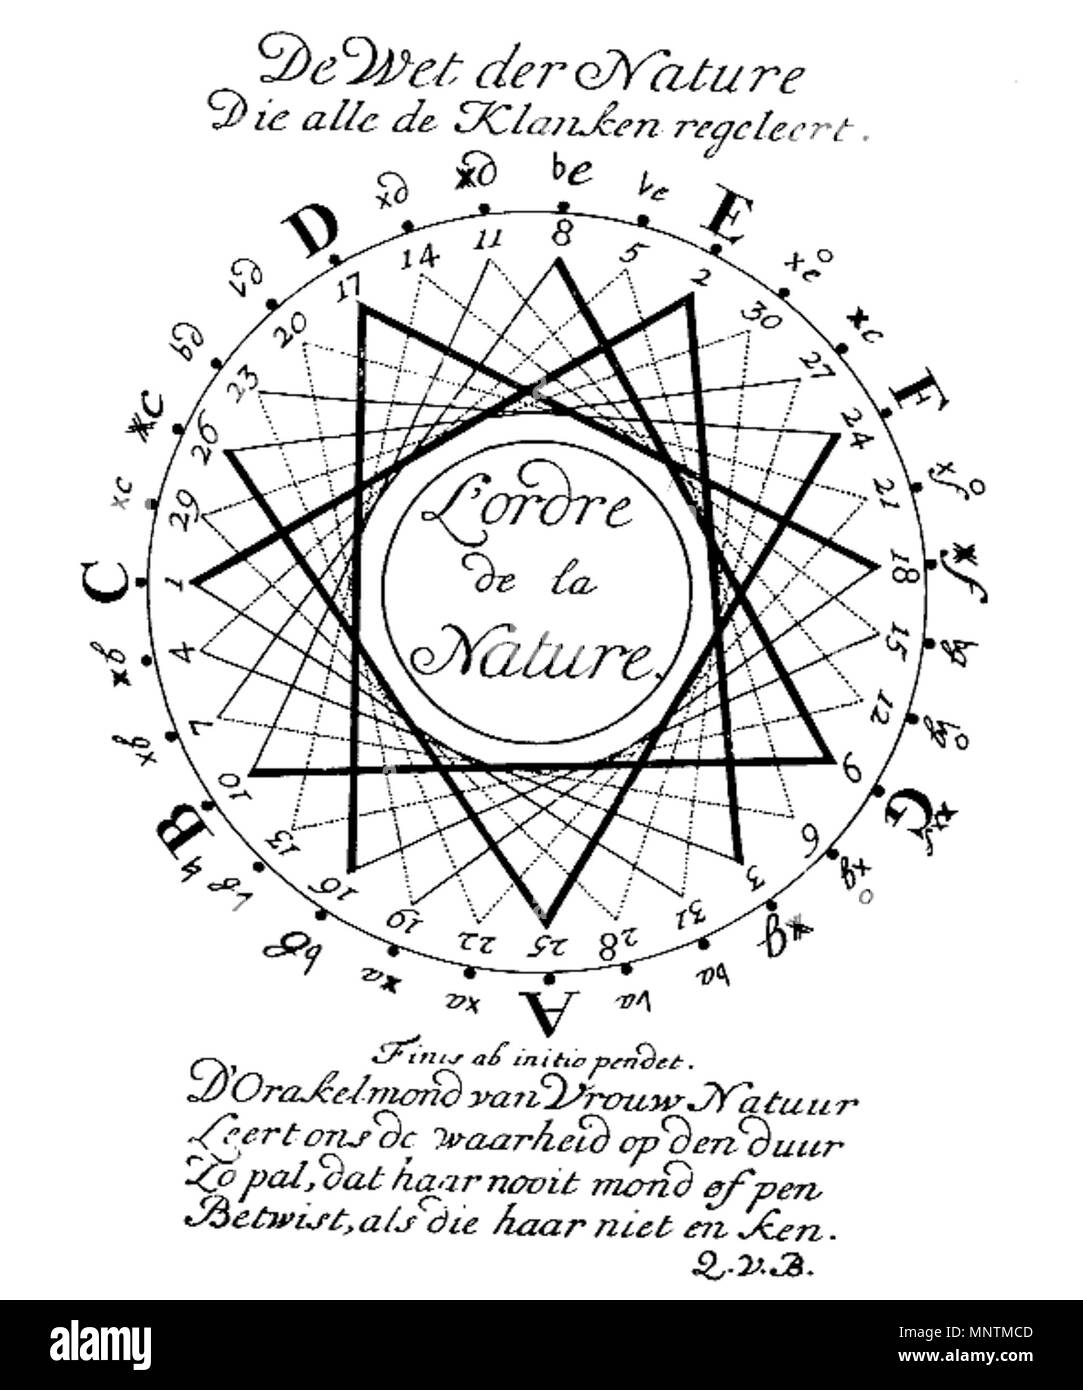 . De Wet der Natur sterben alle de Klanken regeleert (Elementa Musica). 1739. Gravur aus einer Studie im Jahr 1739 Veröffentlicht von Quirinus van Blankenburg 1036 Quirinus van Blankenburg Stockfoto